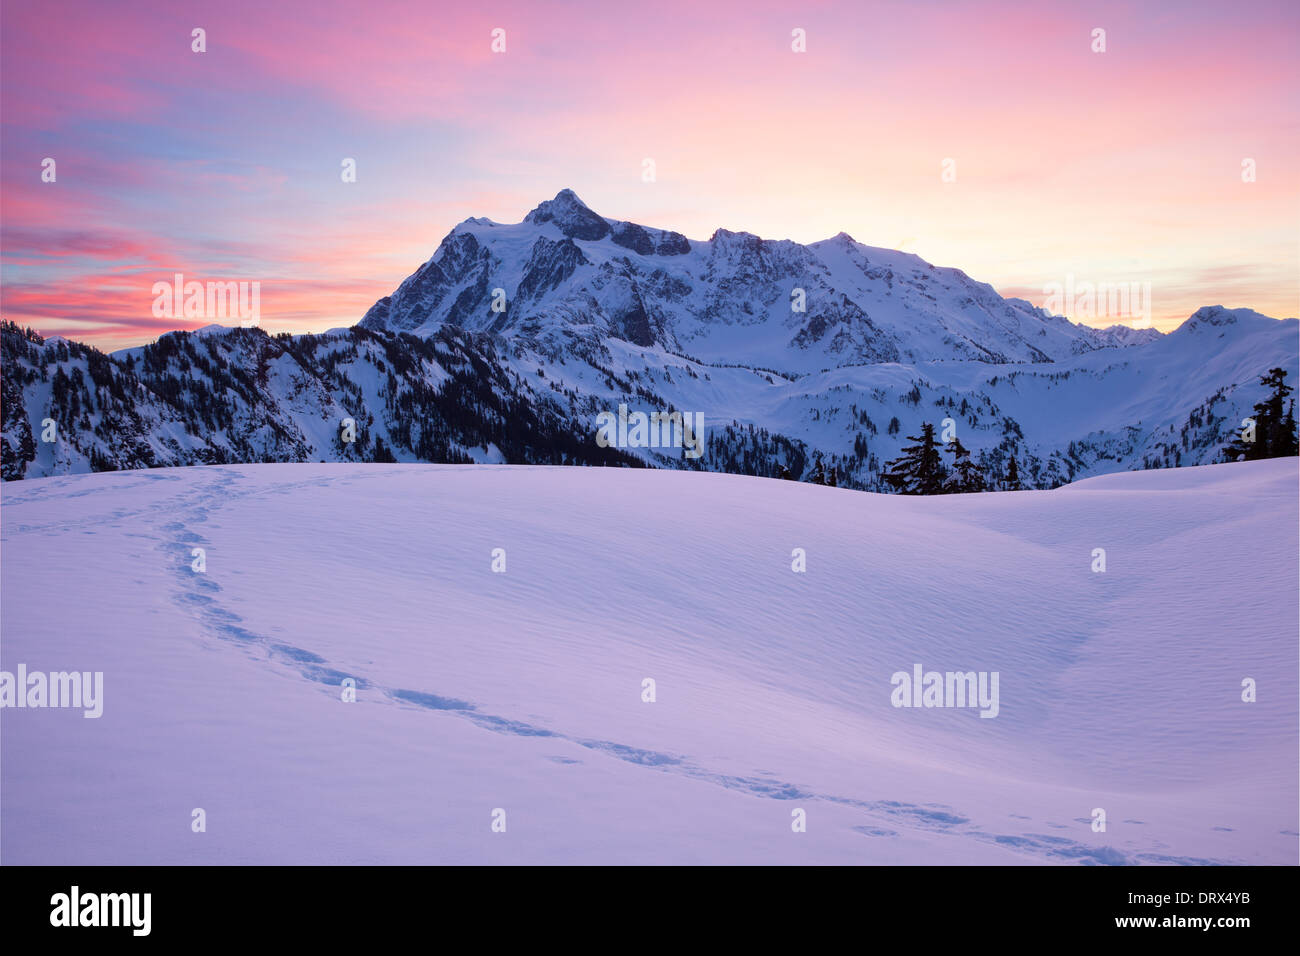 Snow Mountain at Dawn Stock Photo